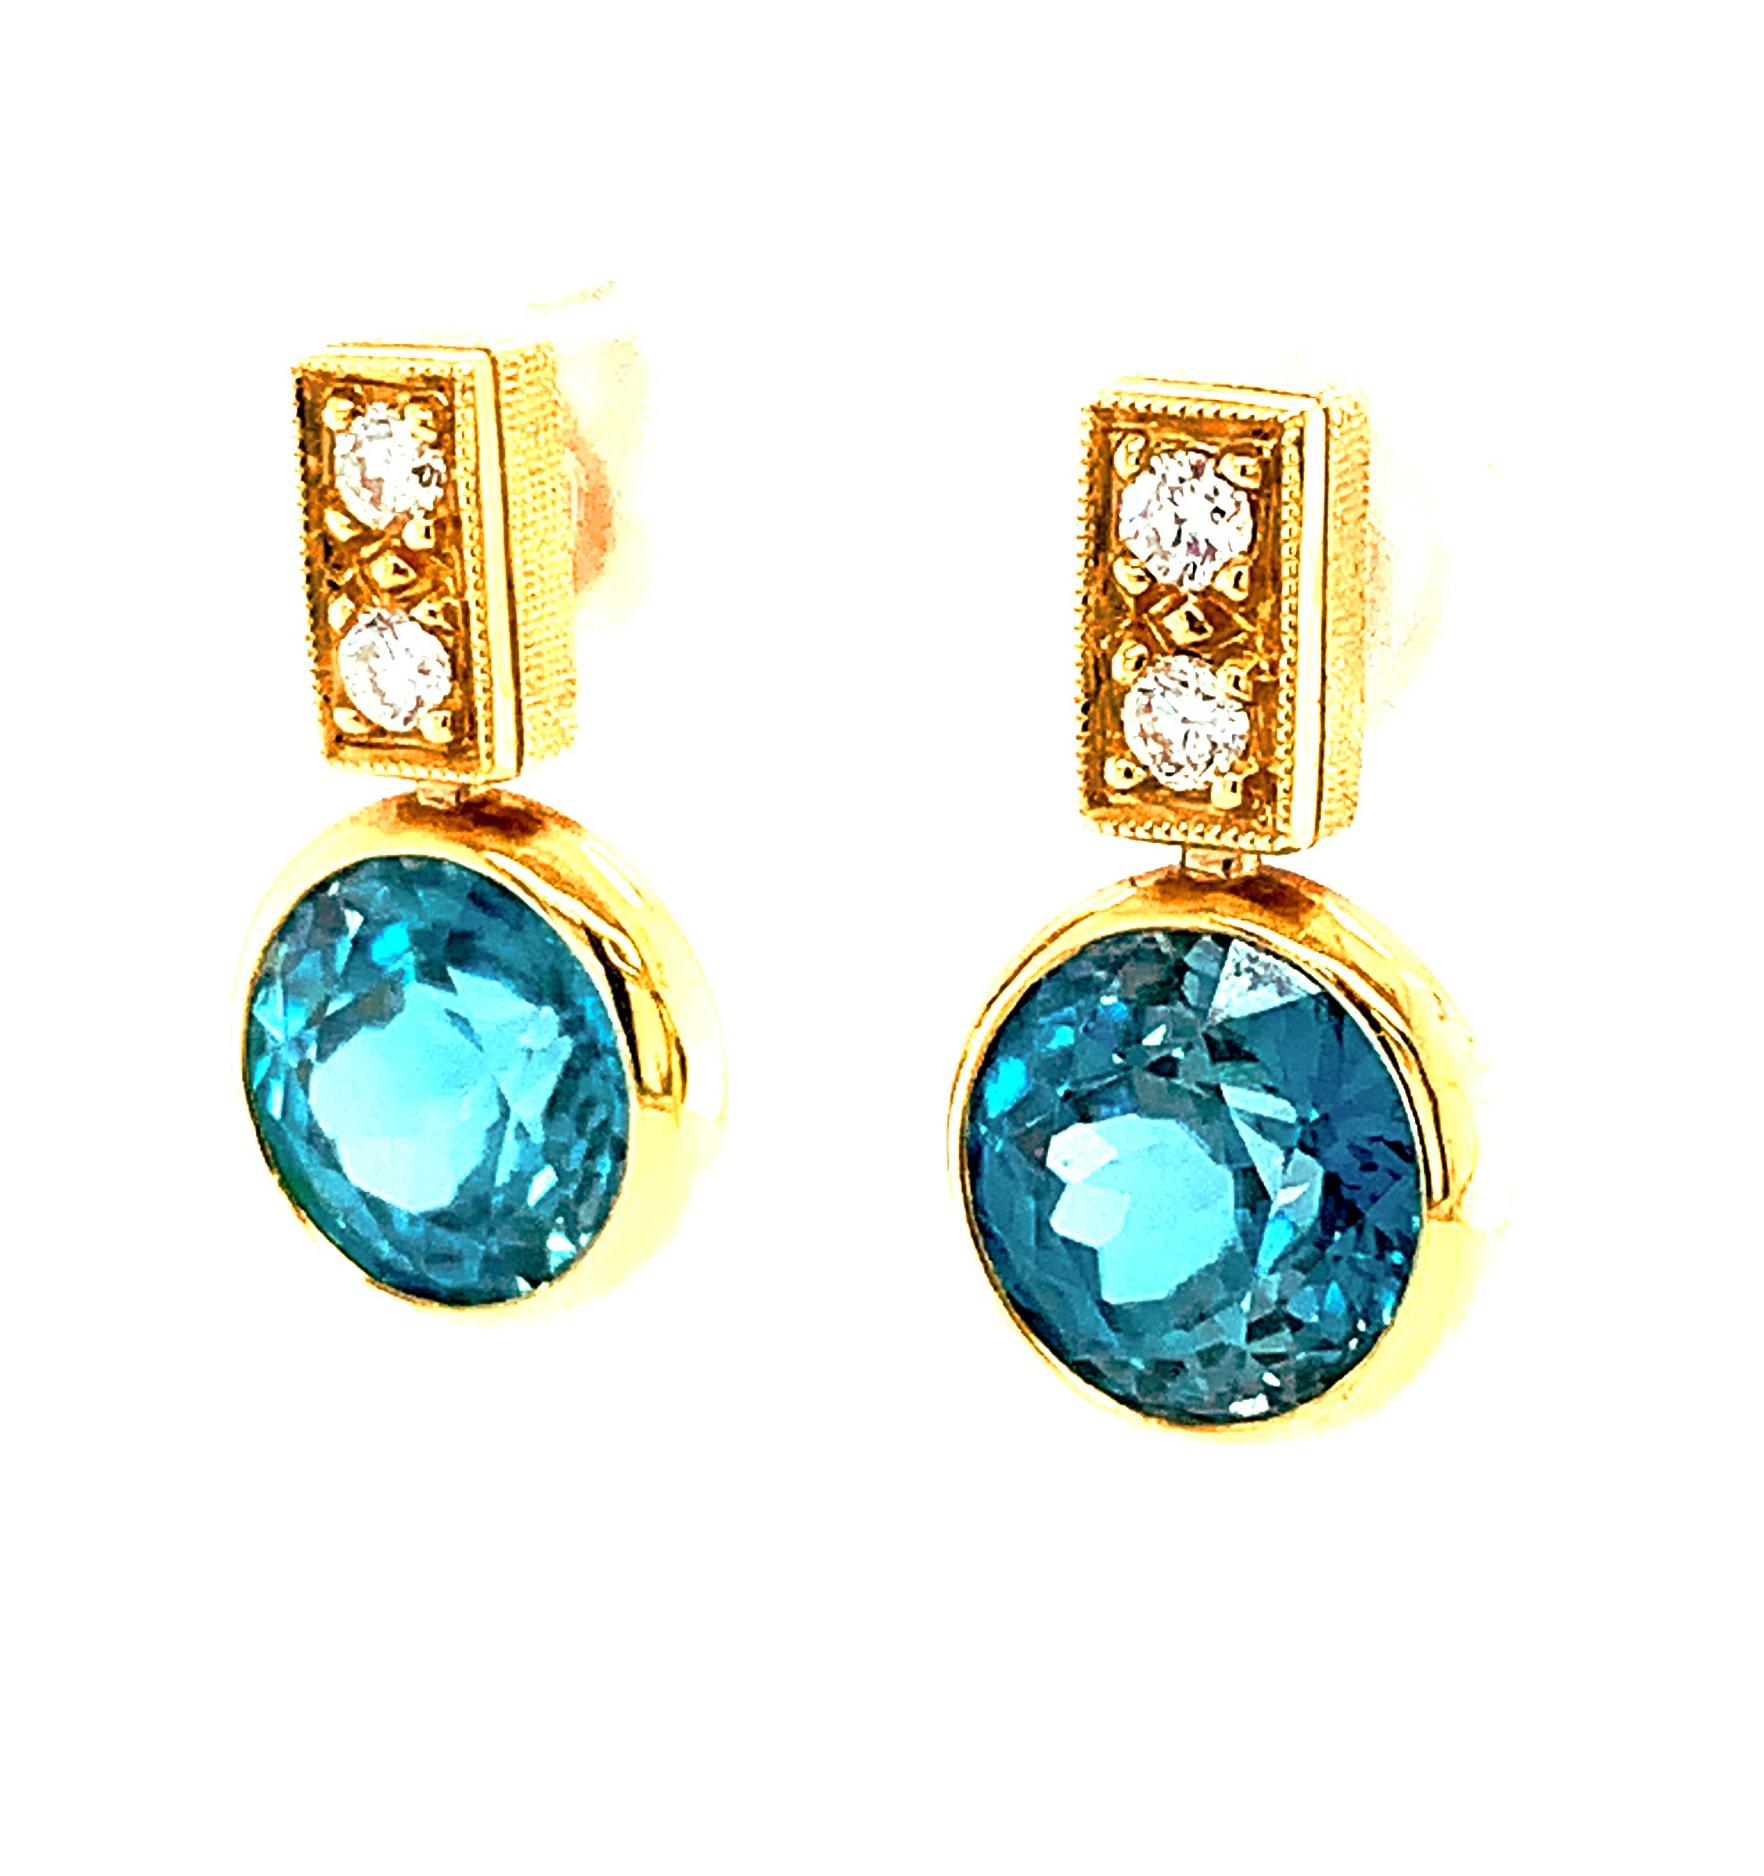 Diese wunderschönen Ohrringe bestehen aus einem Paar blauer Zirkone in Edelsteinqualität, die mit Diamanten in 18 Karat Gelbgold gefasst sind. Es ist selten, dass man ein zusammengehöriges Paar großer, runder blauer Zirkone mit einer so leuchtenden